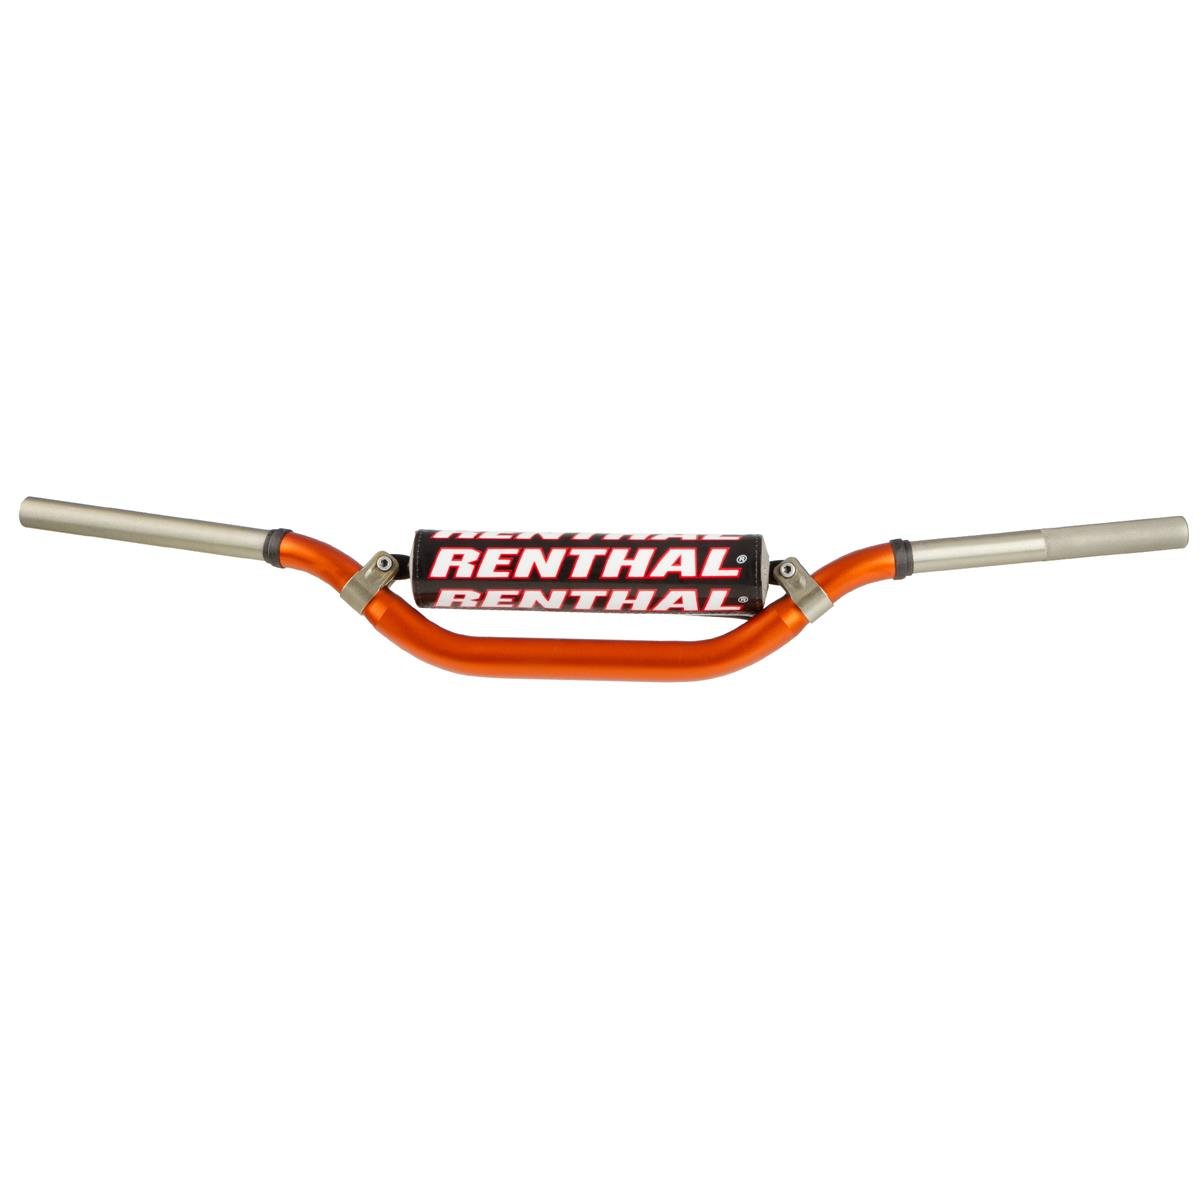 Renthal Manubrio Twinwall 994, 28.6 mm, Arancione